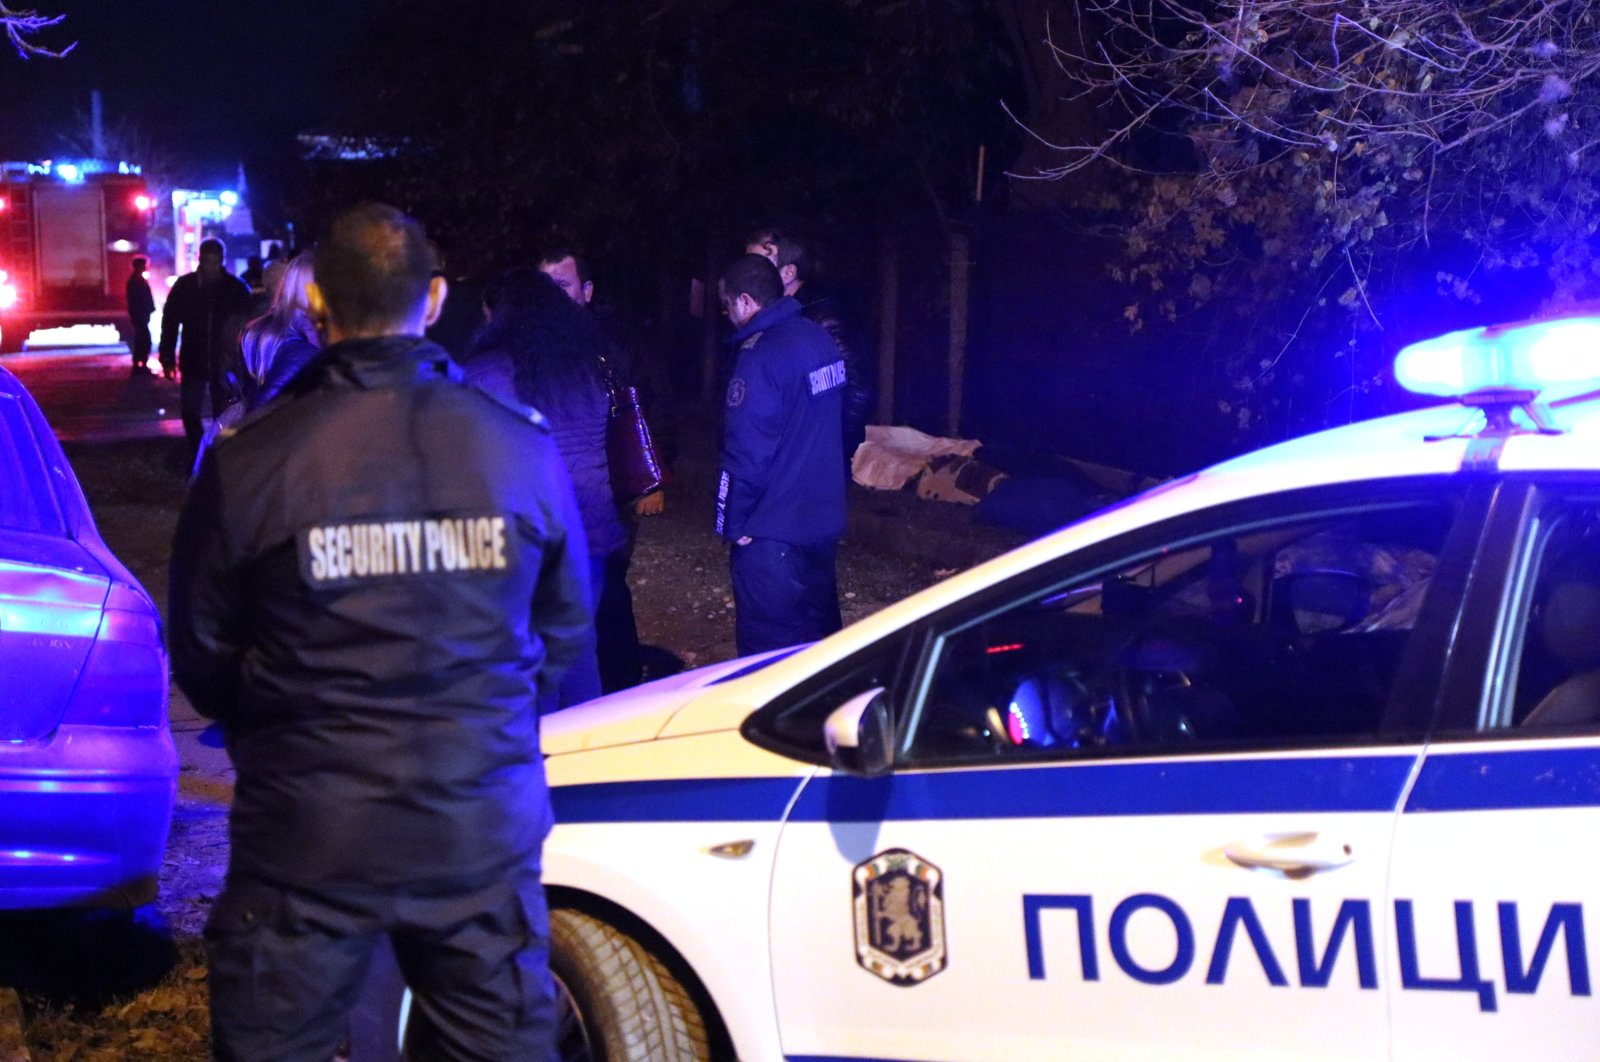 45 tewas dalam kecelakaan bus di Bulgaria barat